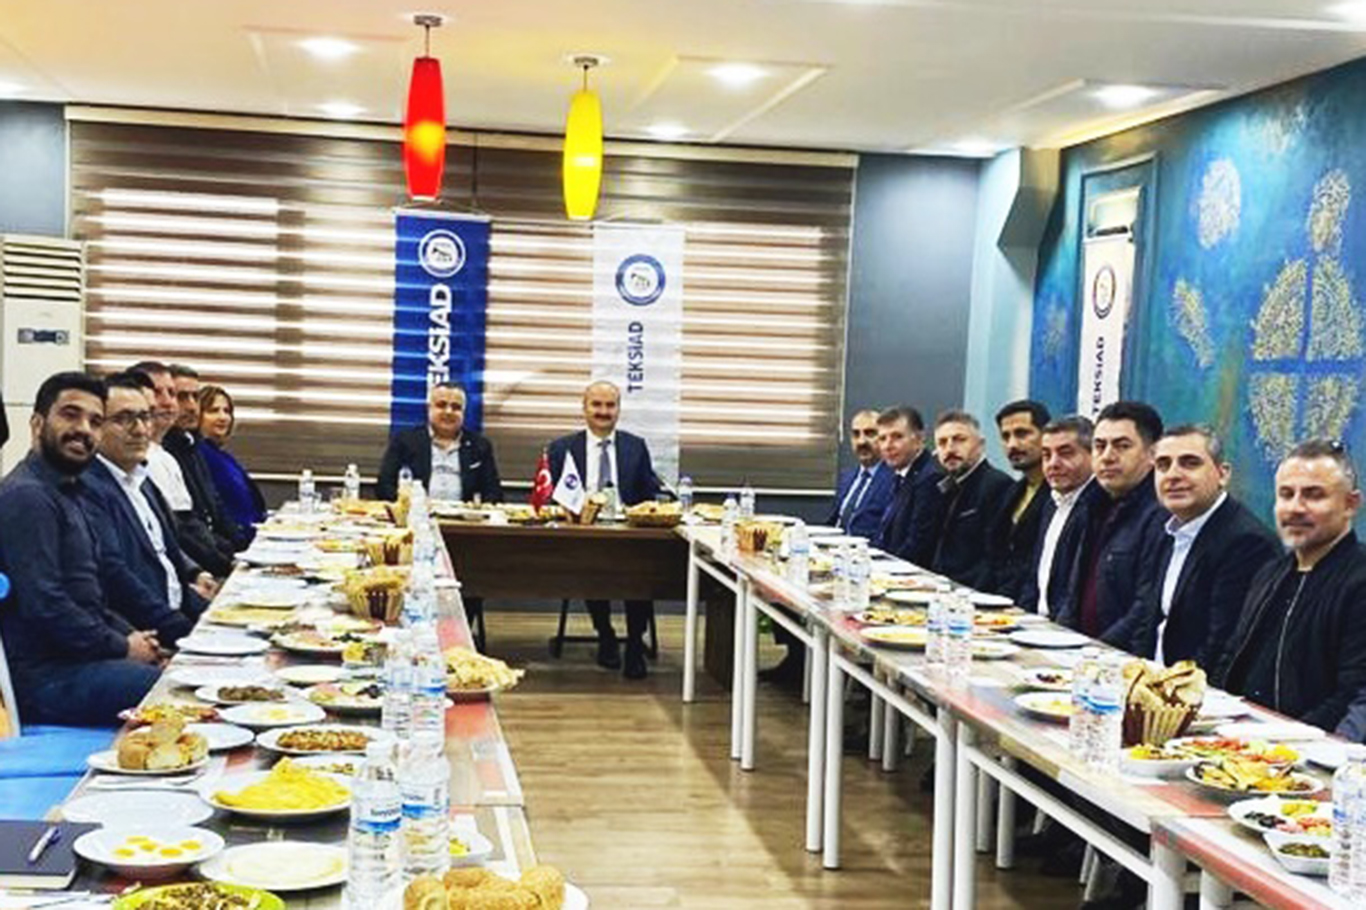 TEKSİAD Başkanı Yaşar: Tekstil kentte faaliyet gösteren firmalar iş almakta sorun yaşıyor